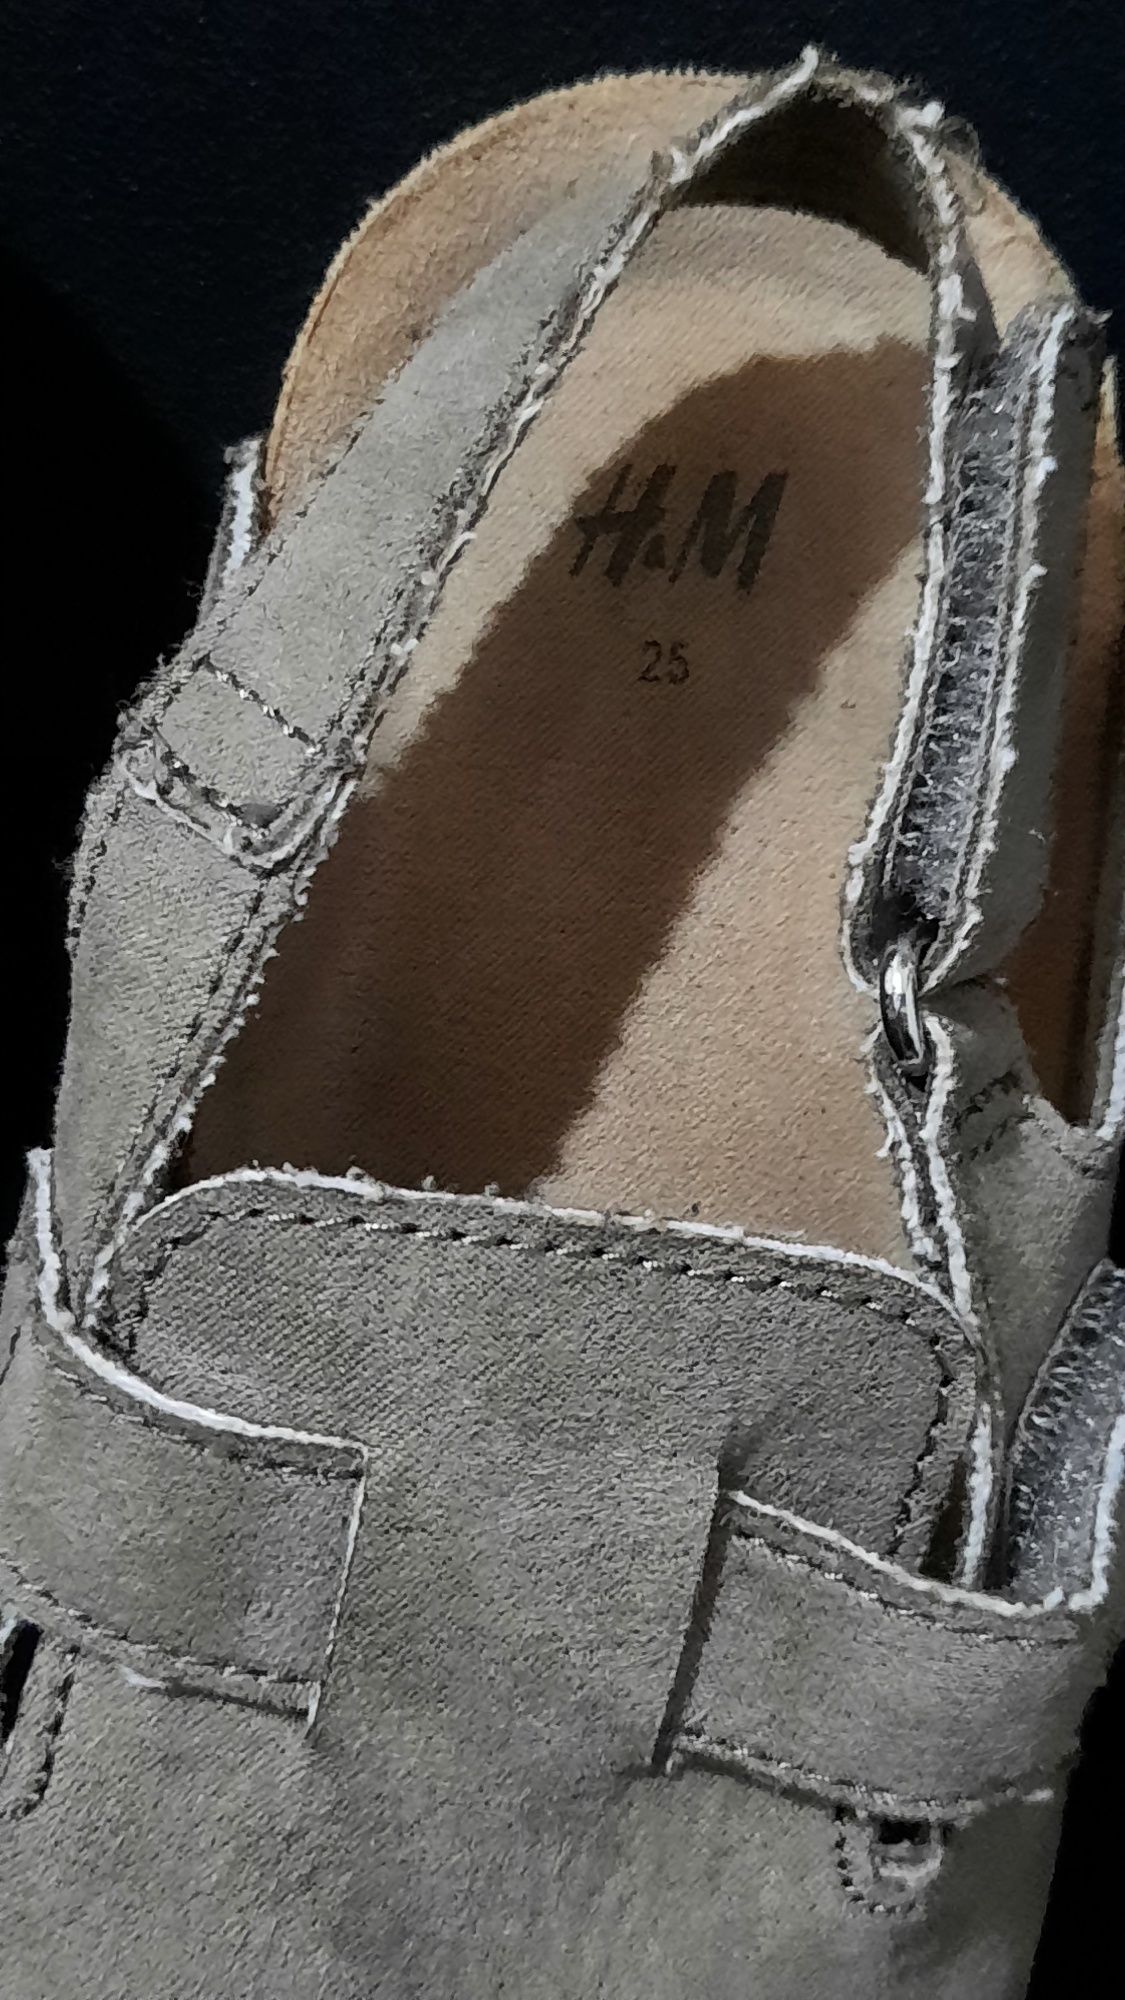 Sandale copii H&M